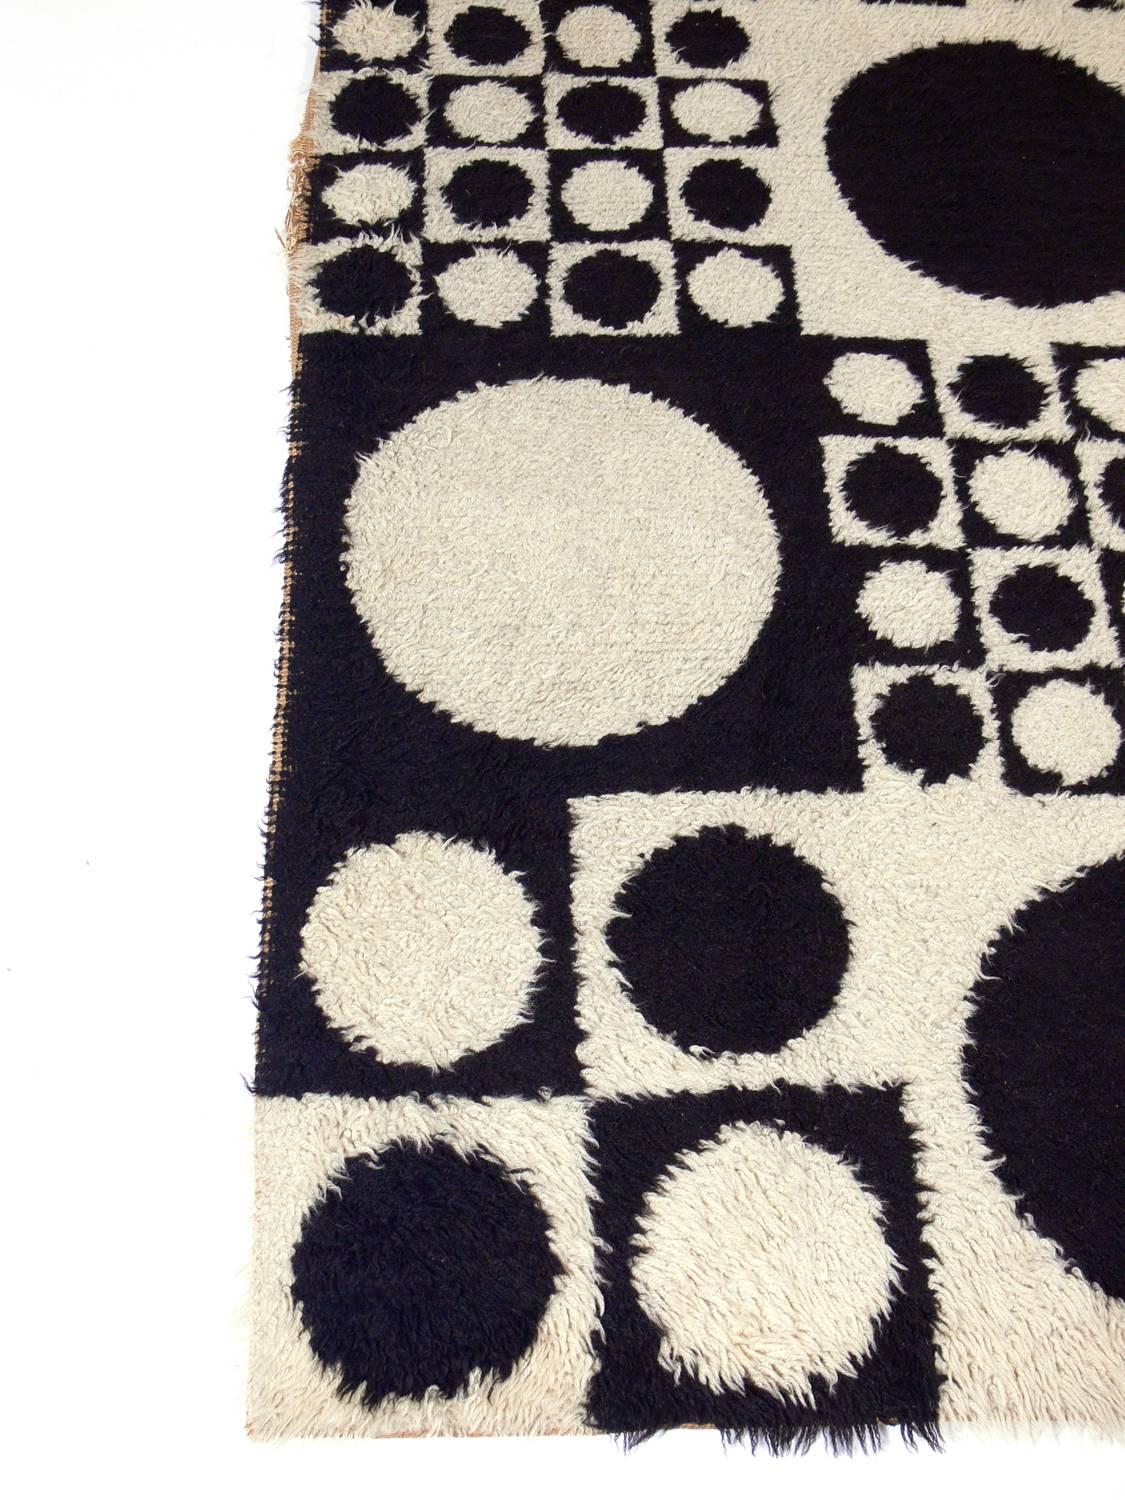 Swiss Verner Panton Geometri Carpet or Wall Tapestry